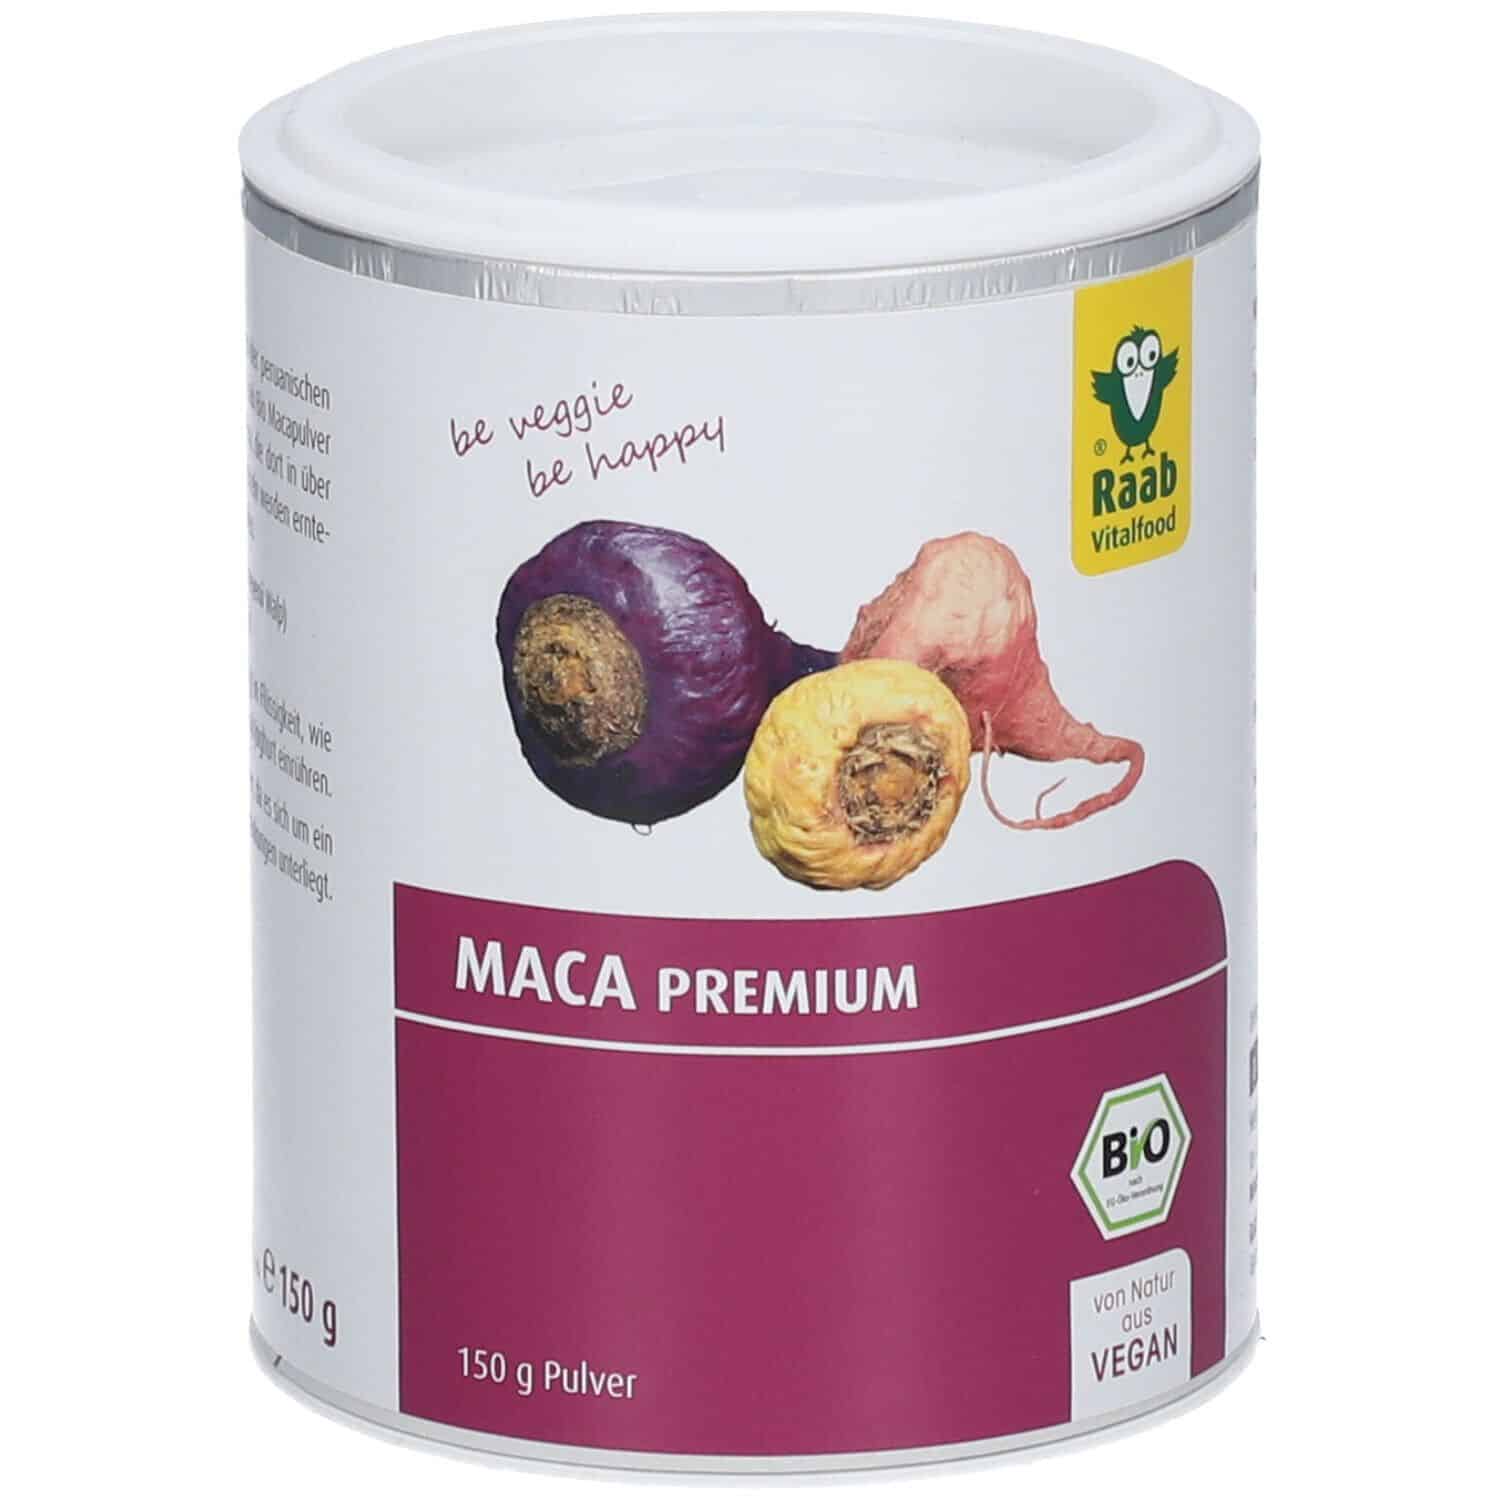 Raab Bio Maca Premium Pulver